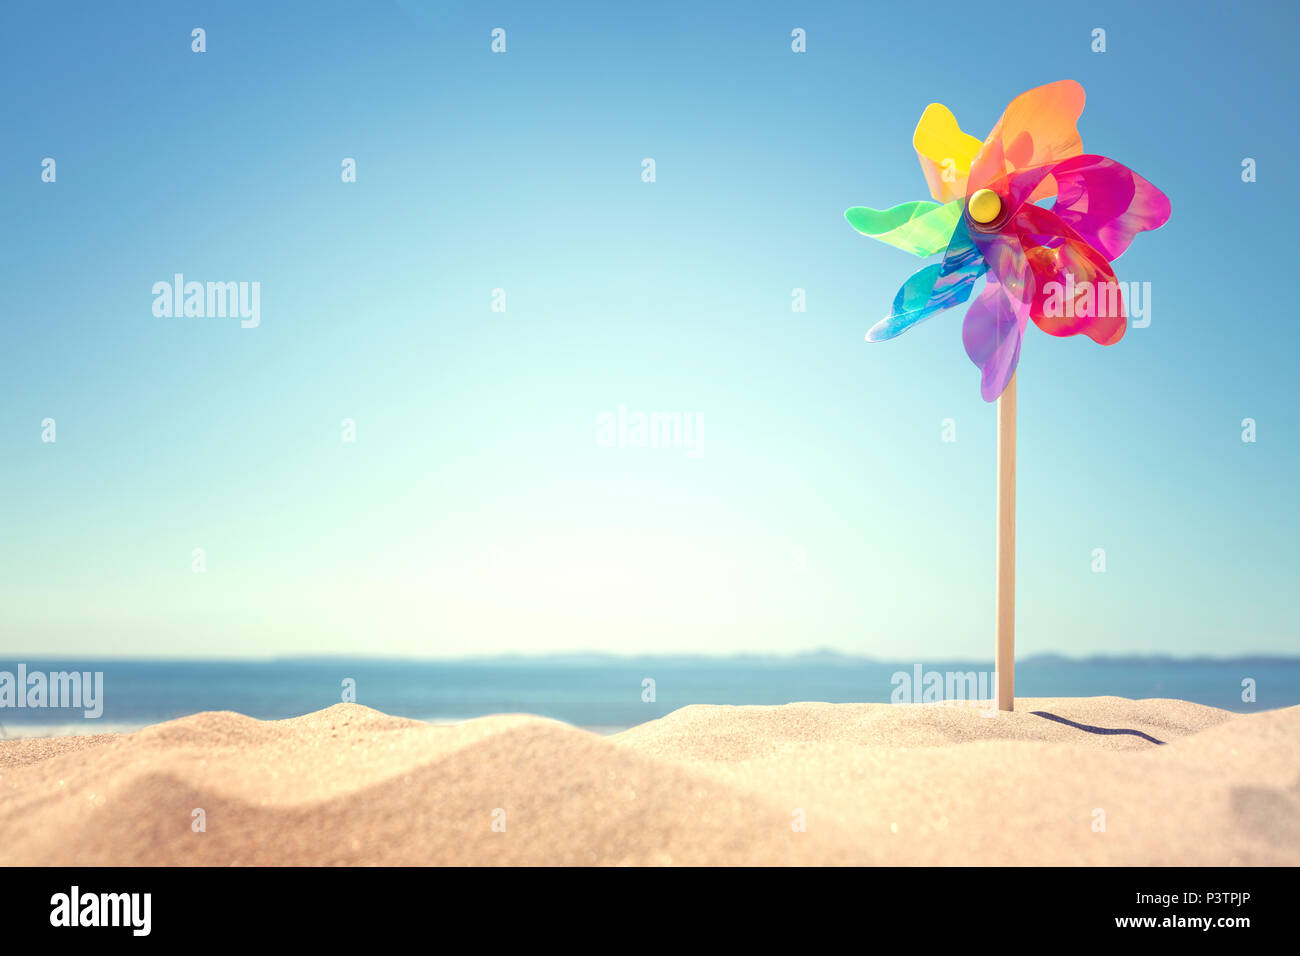 Fond de plage d'été, soleil ou moulin dans le sable concept pour locations de copier ou d'un message Banque D'Images